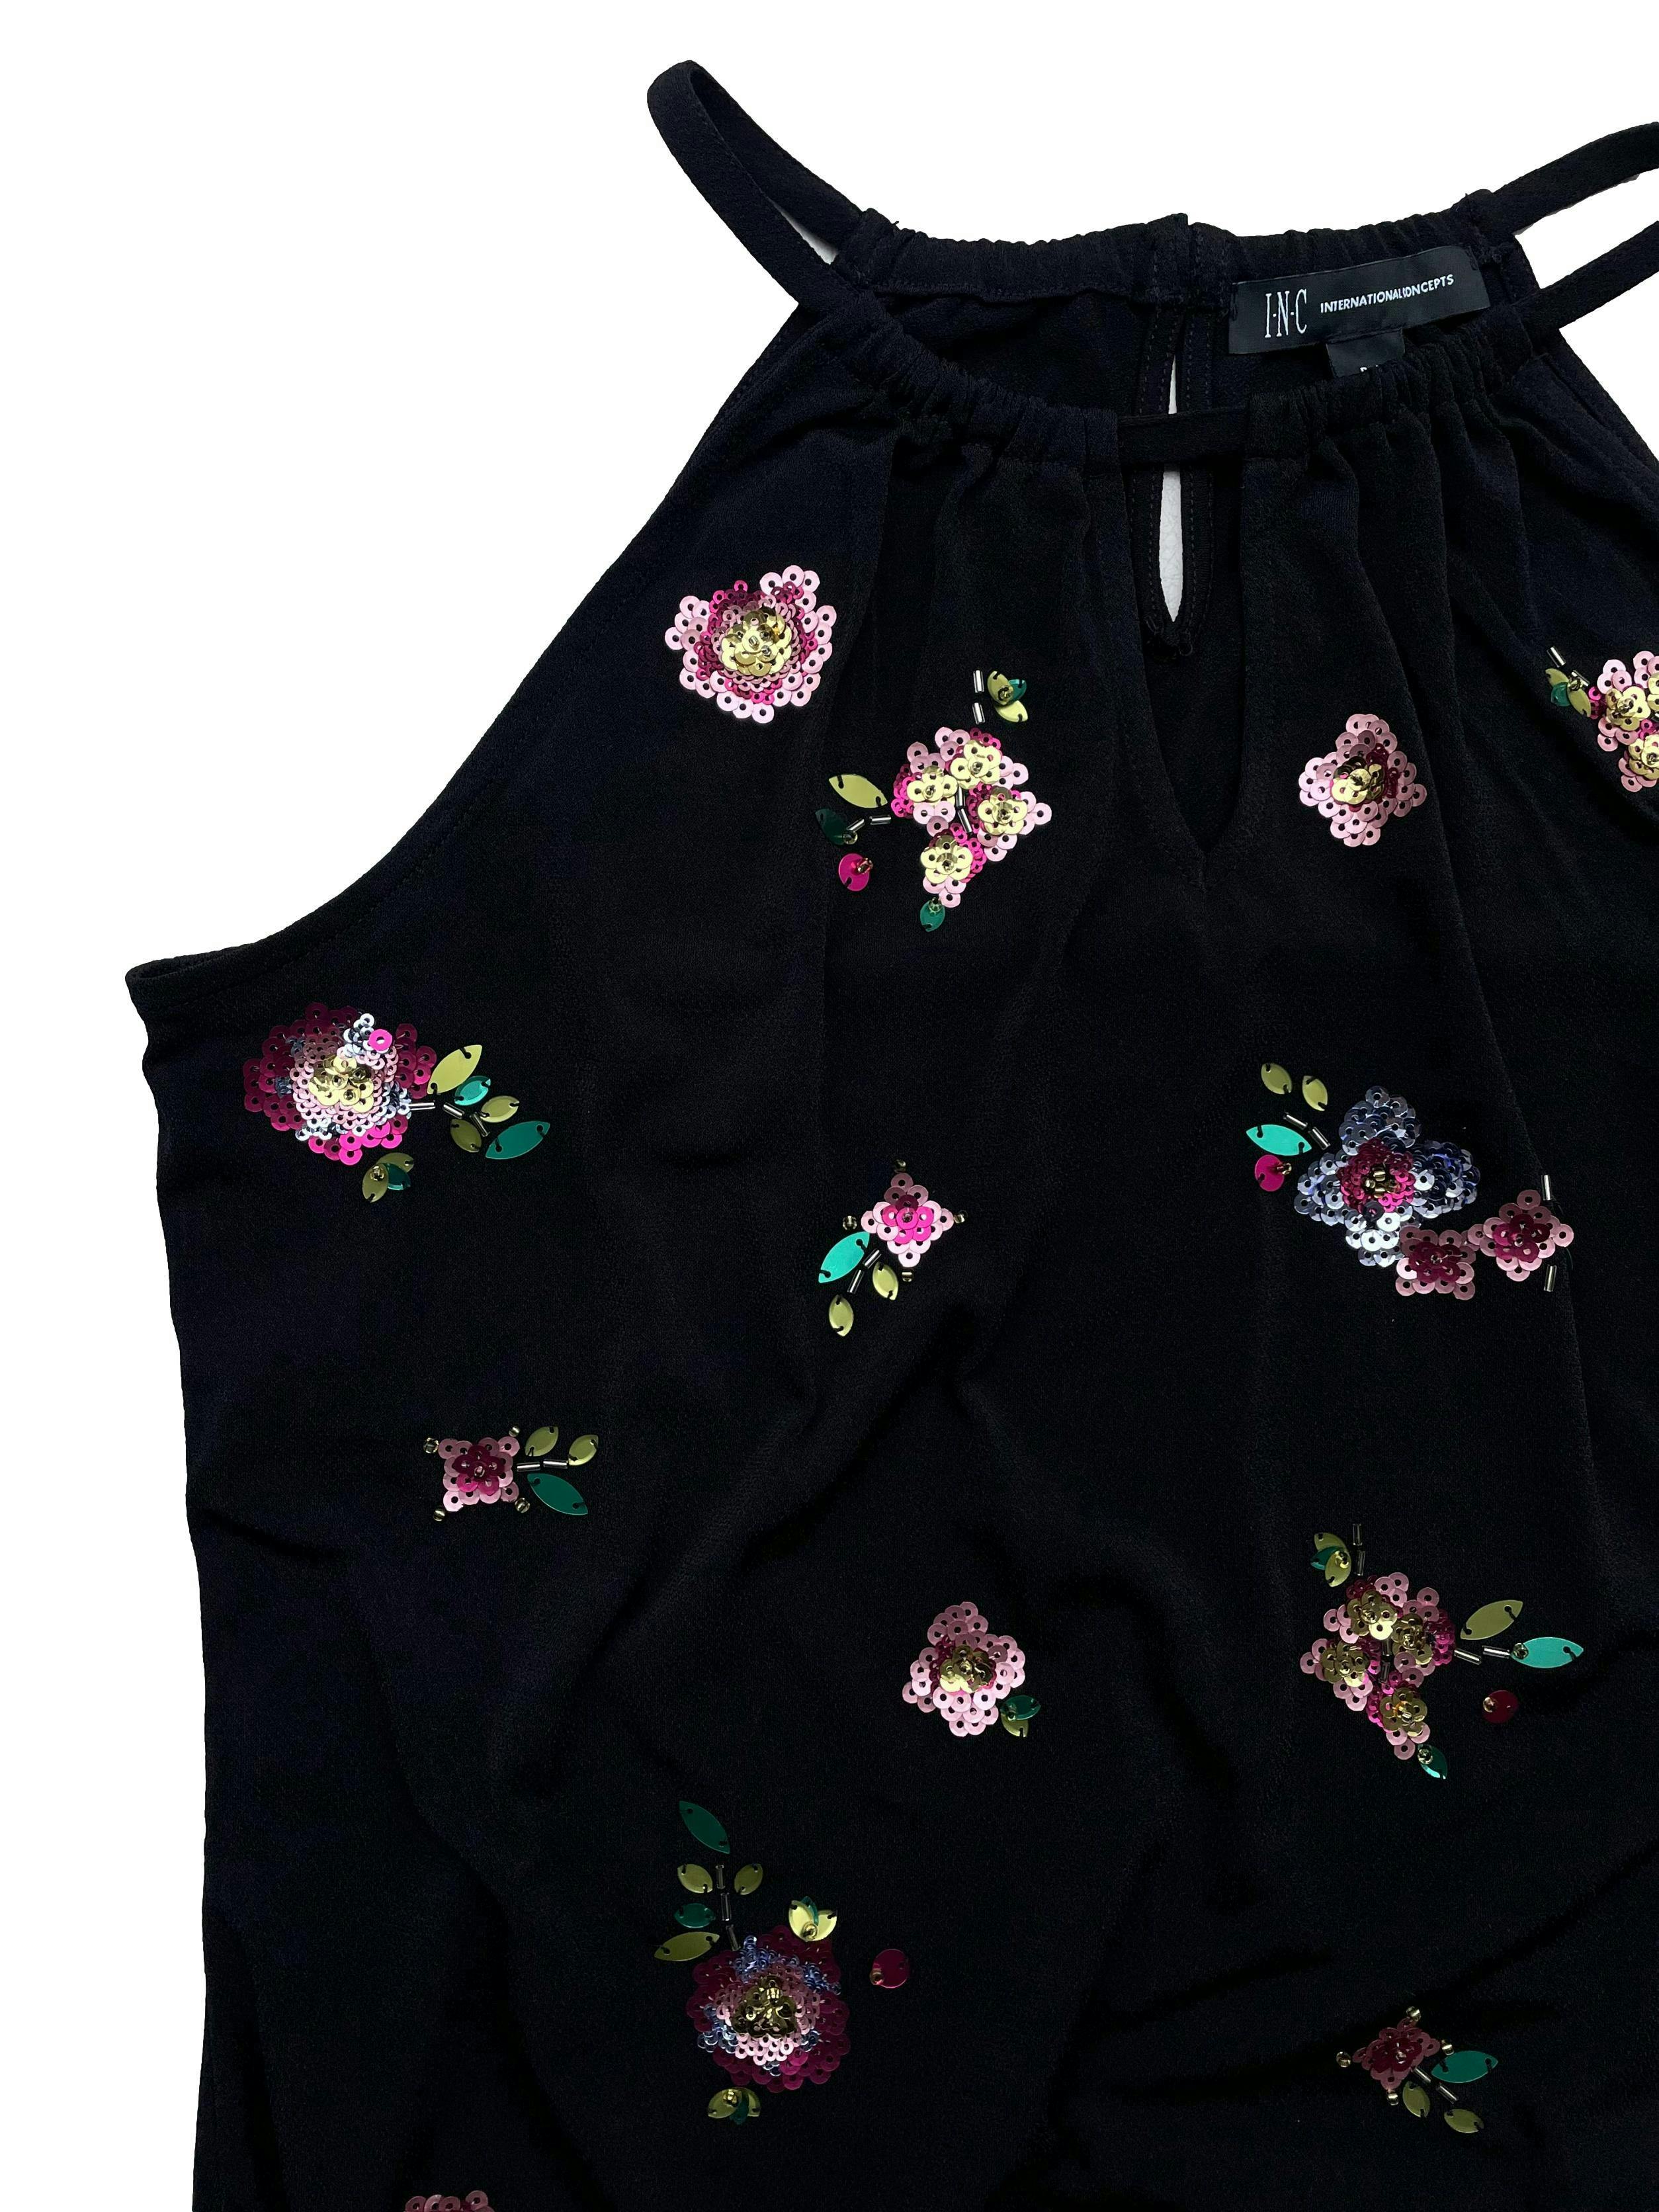 Blusa Iternational Concepts color negro, pequeña abertura en la parte delantera, manga cero, con detalle de flores en lentejuelas en la parte delantera y elástico en la parte inferior. Busto: 95cm, Largo:51cm